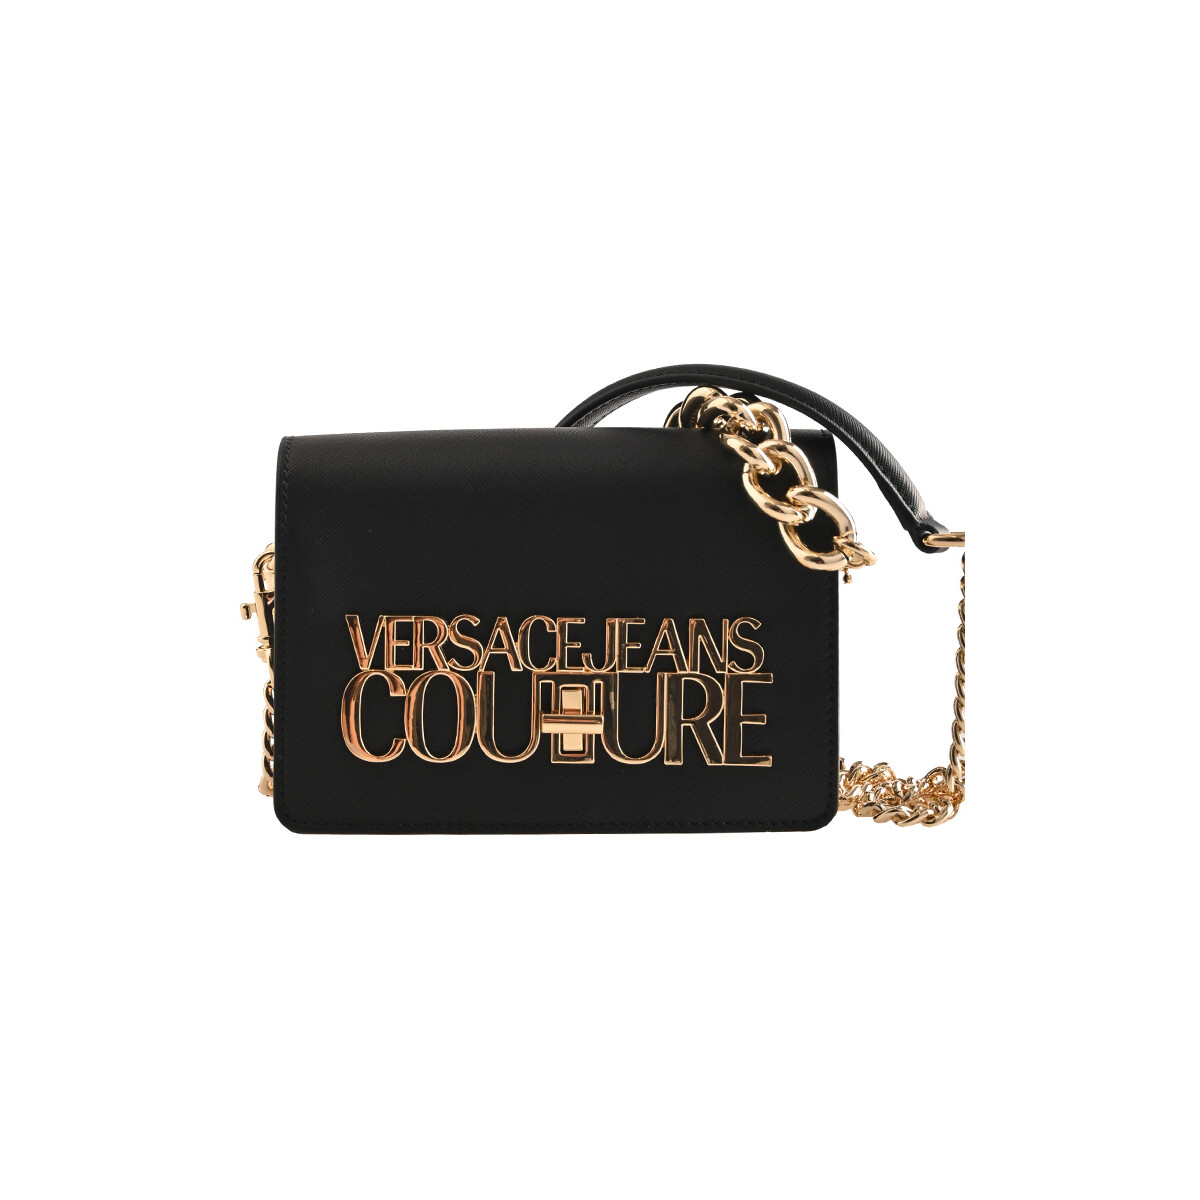 Versace Jeans Couture Noir 75va4bl3zs467-899 Cw8ZE2cA